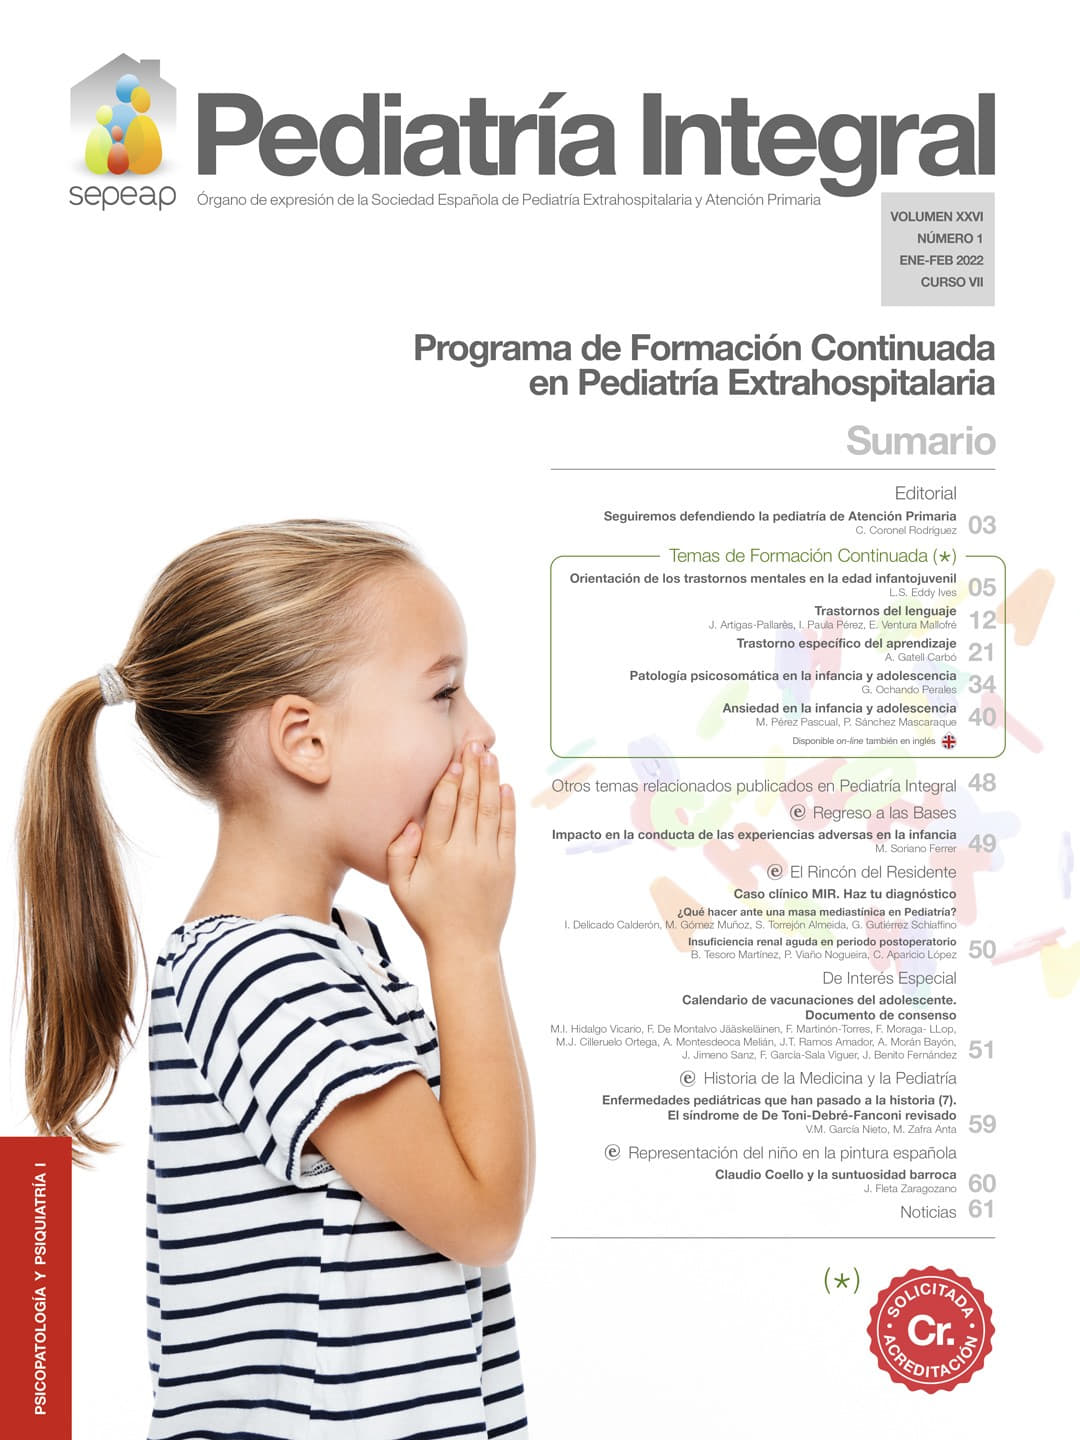 Pediatría Integral Psicopatología y Psiquiatría I